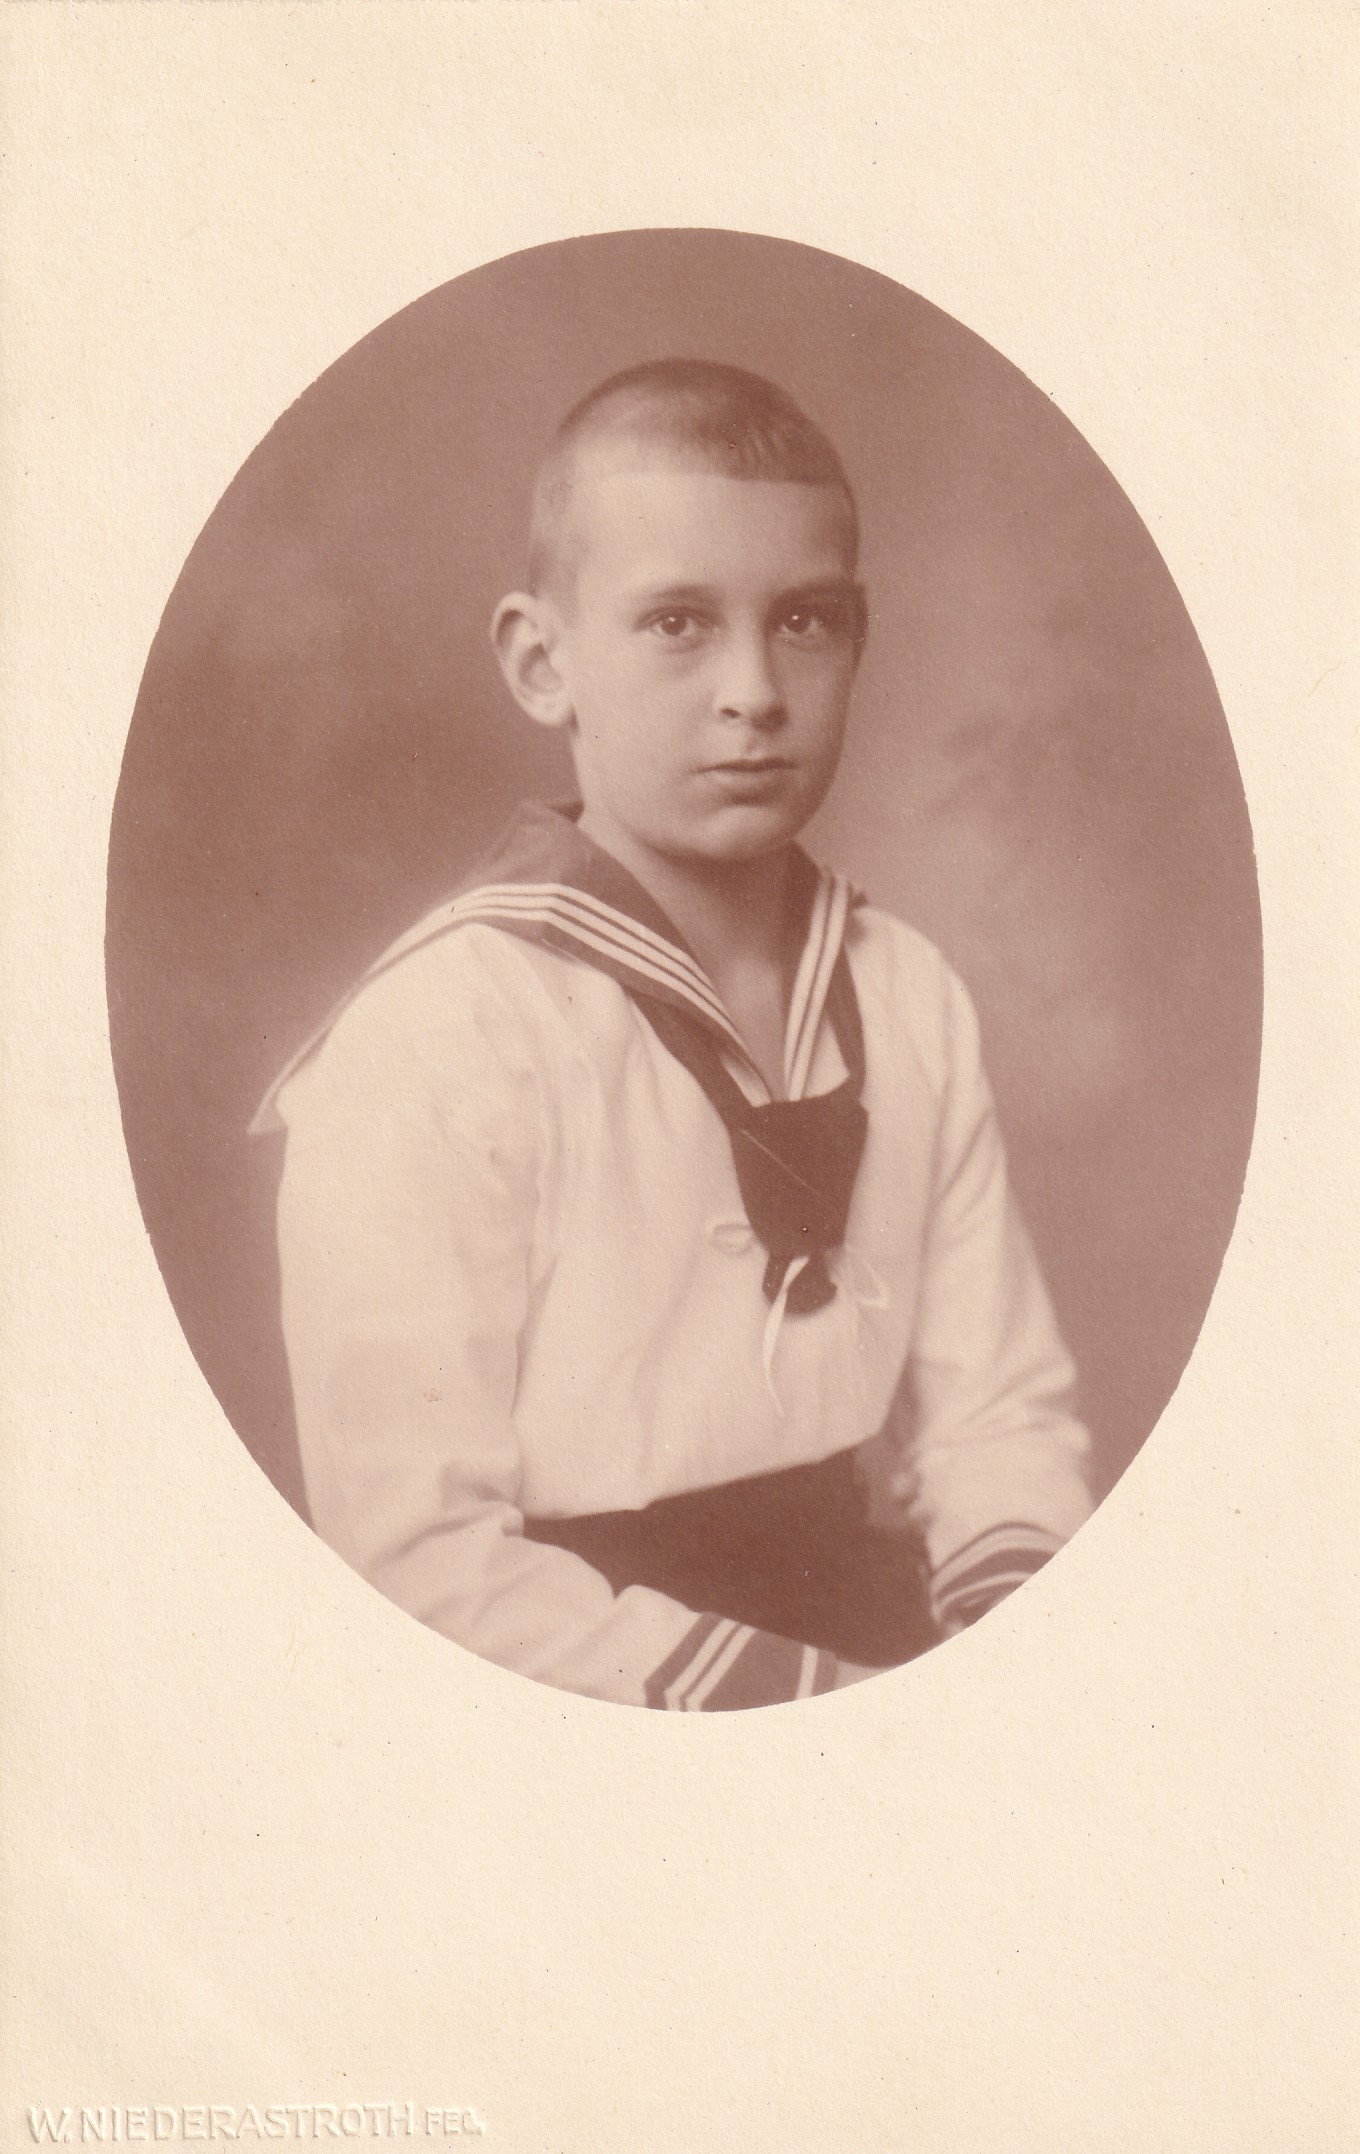 Bildpostkarte mit Foto des Prinzen Hubertus von Preußen (1909-1950), 1919 (Schloß Wernigerode GmbH RR-F)